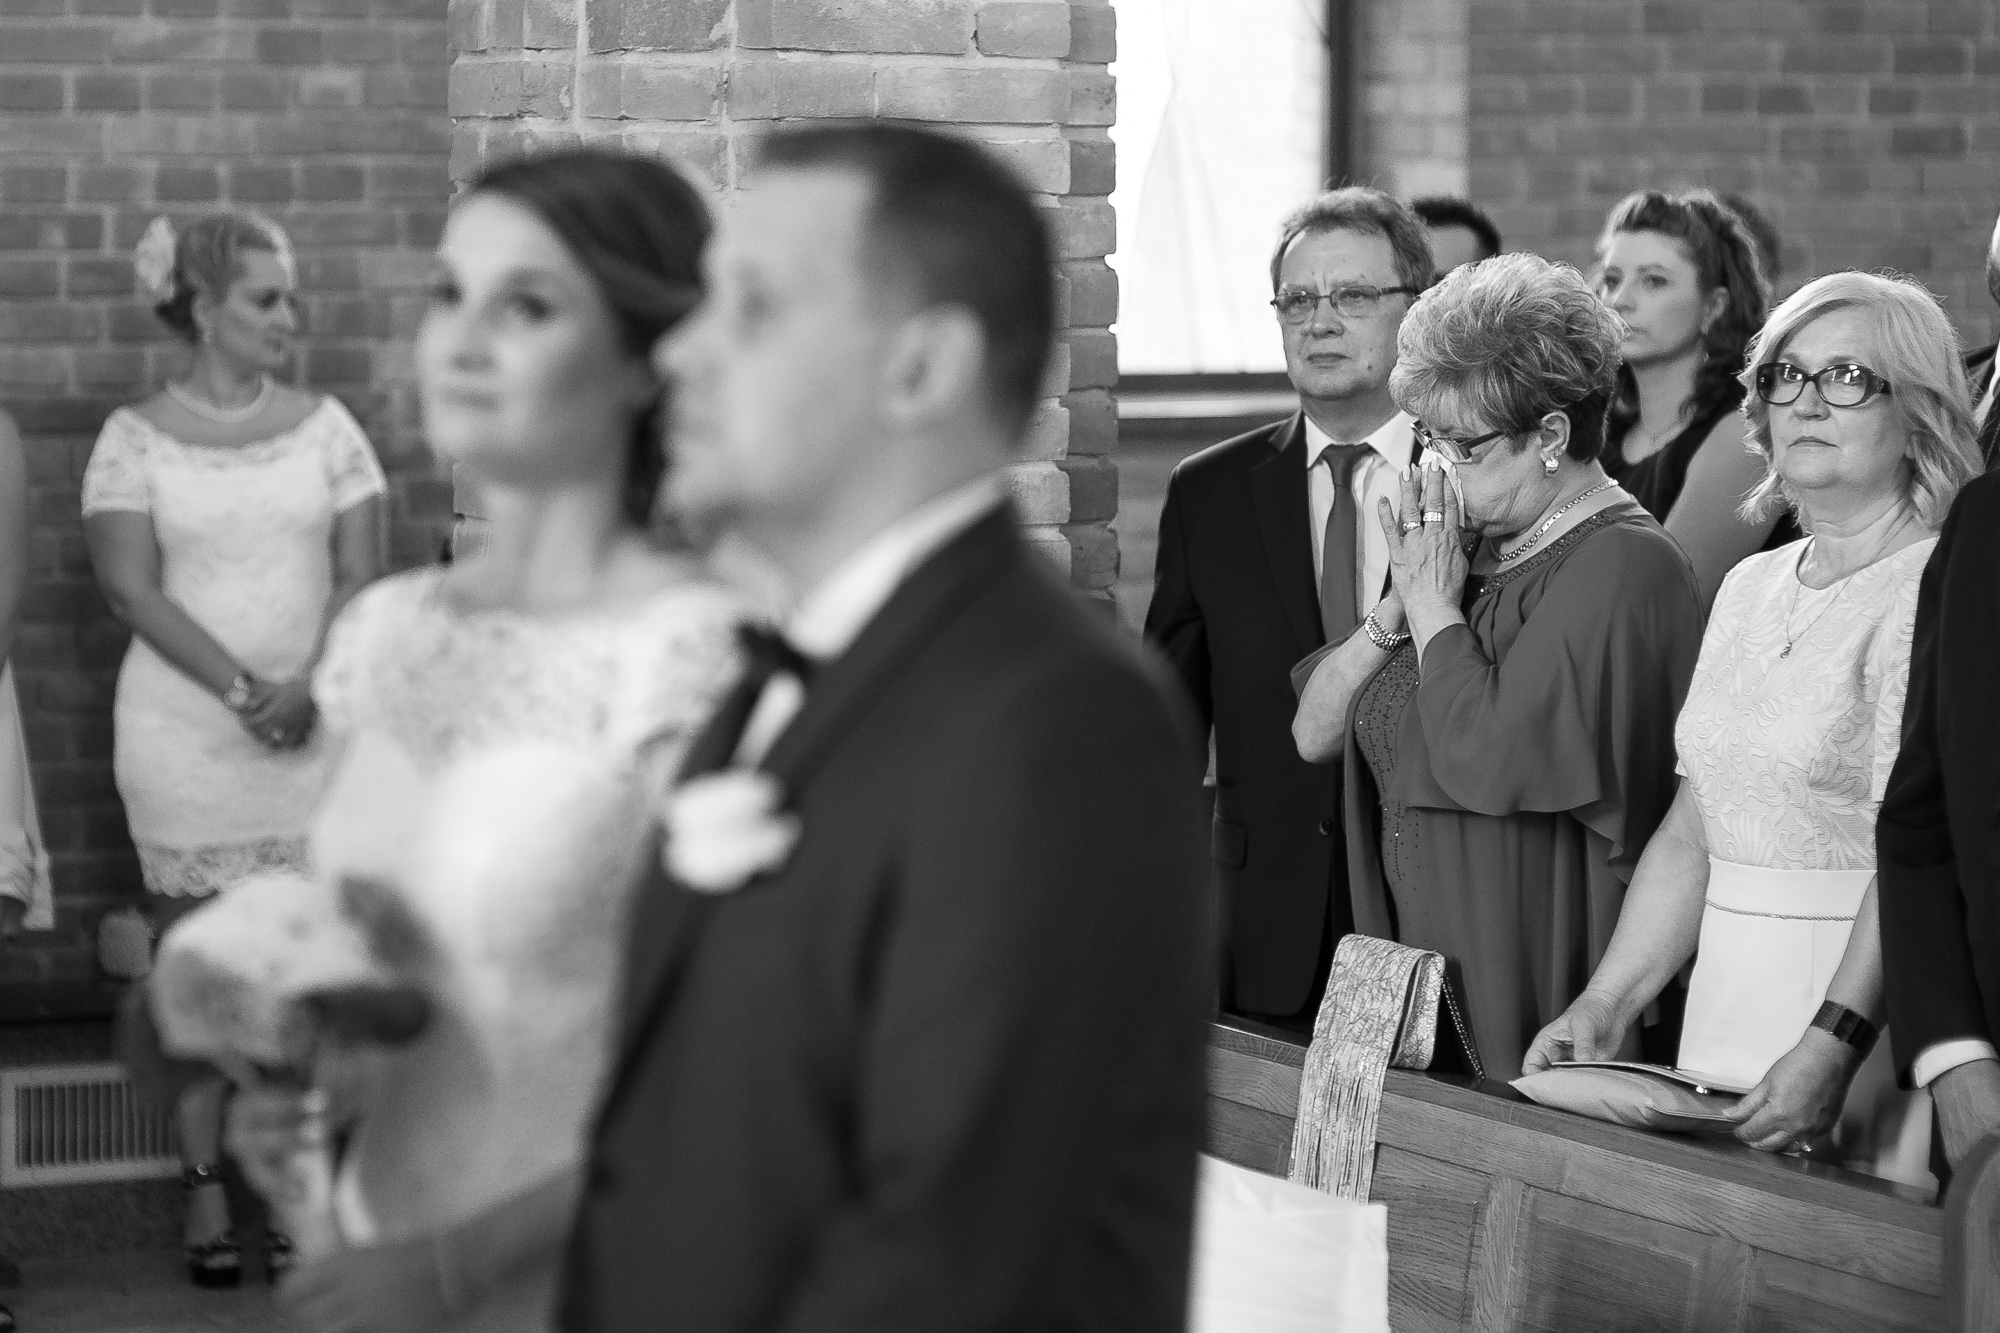 Łzy wzruszenia rodziców i ulotne momenty na zdjęciach ze ślubu wyszukane przez fotografa